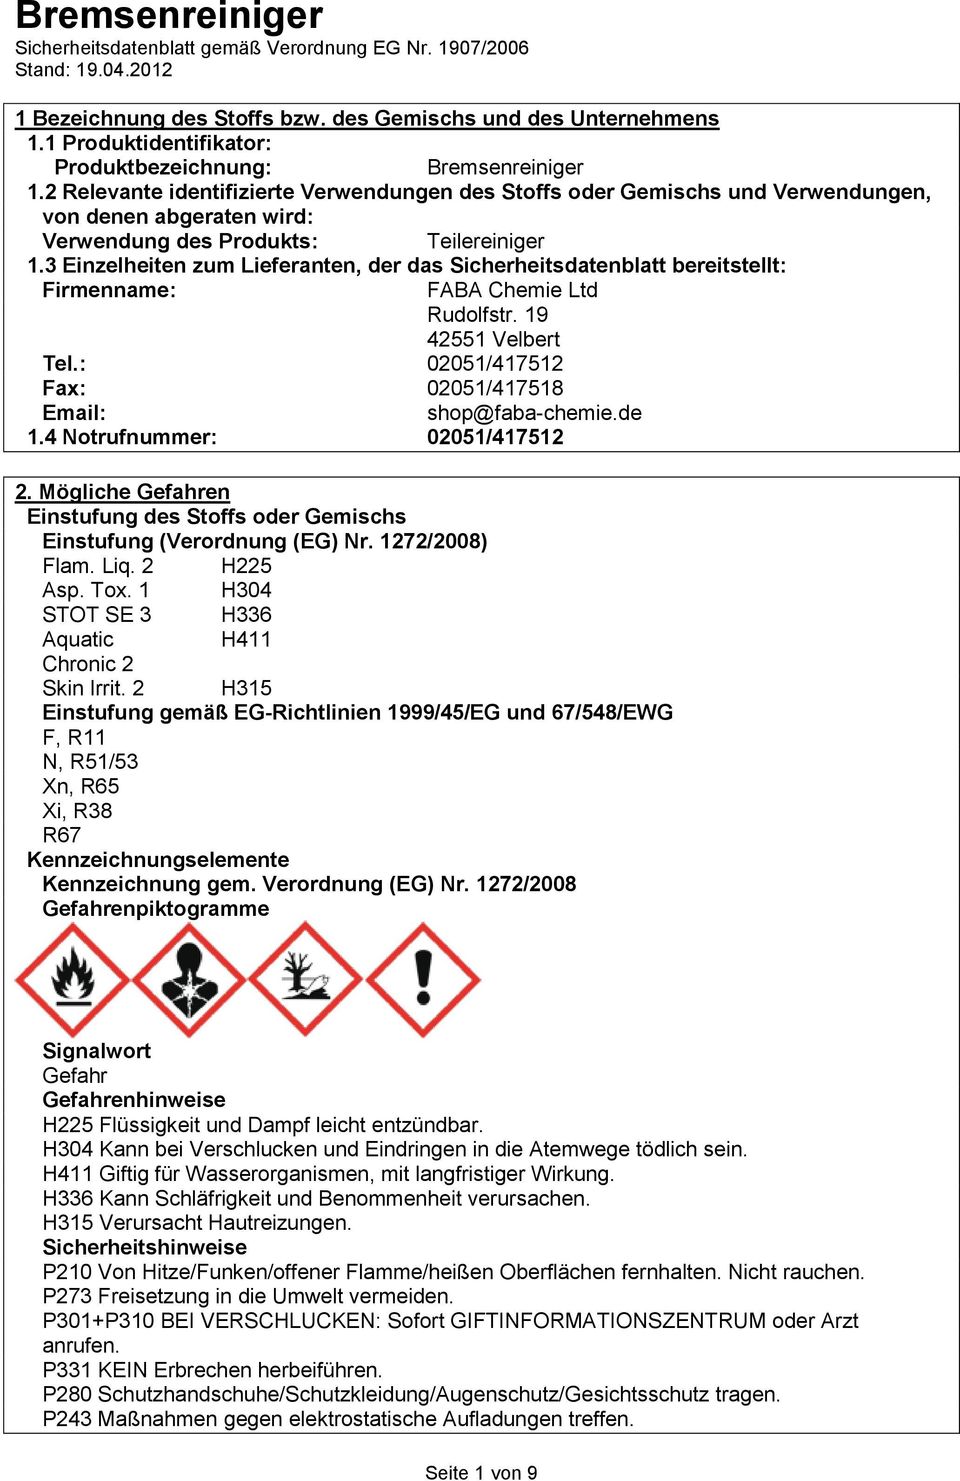 3 Einzelheiten zum Lieferanten, der das Sicherheitsdatenblatt bereitstellt: Firmenname: FABA Chemie Ltd Rudolfstr. 19 42551 Velbert Tel.: 02051/417512 Fax: 02051/417518 Email: shop@faba-chemie.de 1.